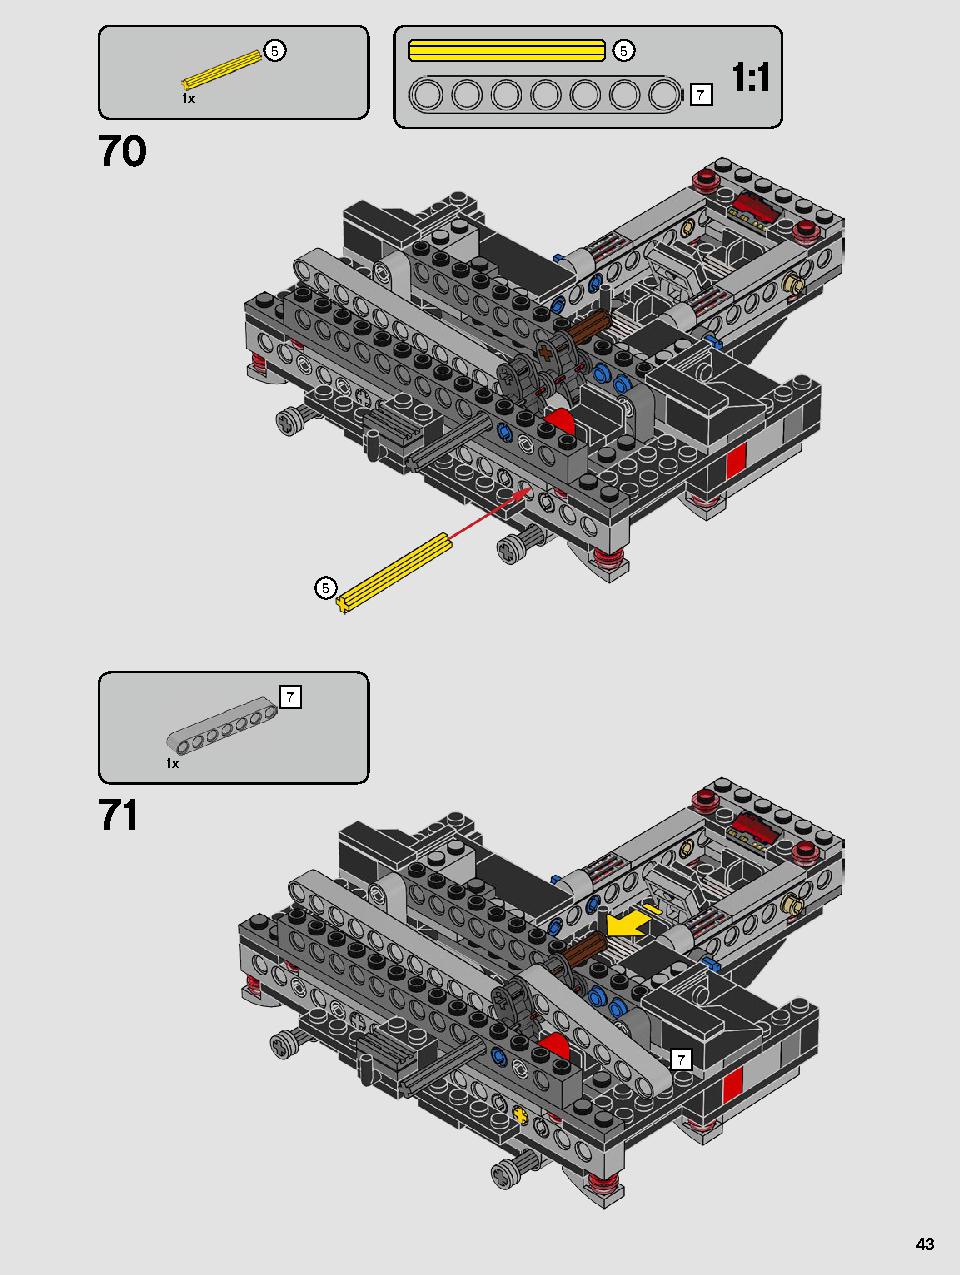 스타워즈 카일로 렌의 셔틀™ 75256 레고 세트 제품정보 레고 조립설명서 43 page